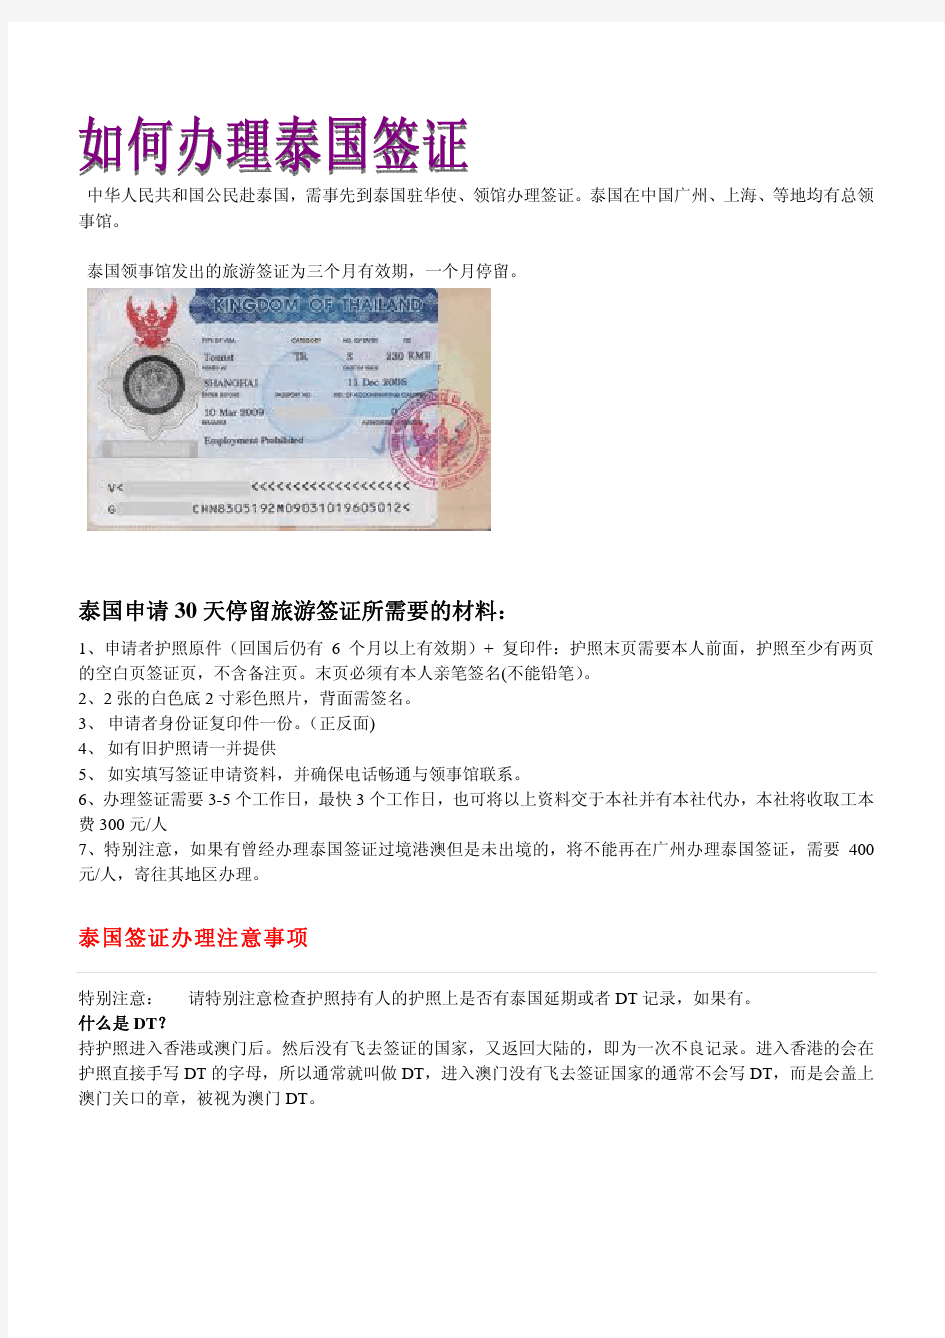 护照(passport)是一个国家的公民出入本国国境和到国外旅